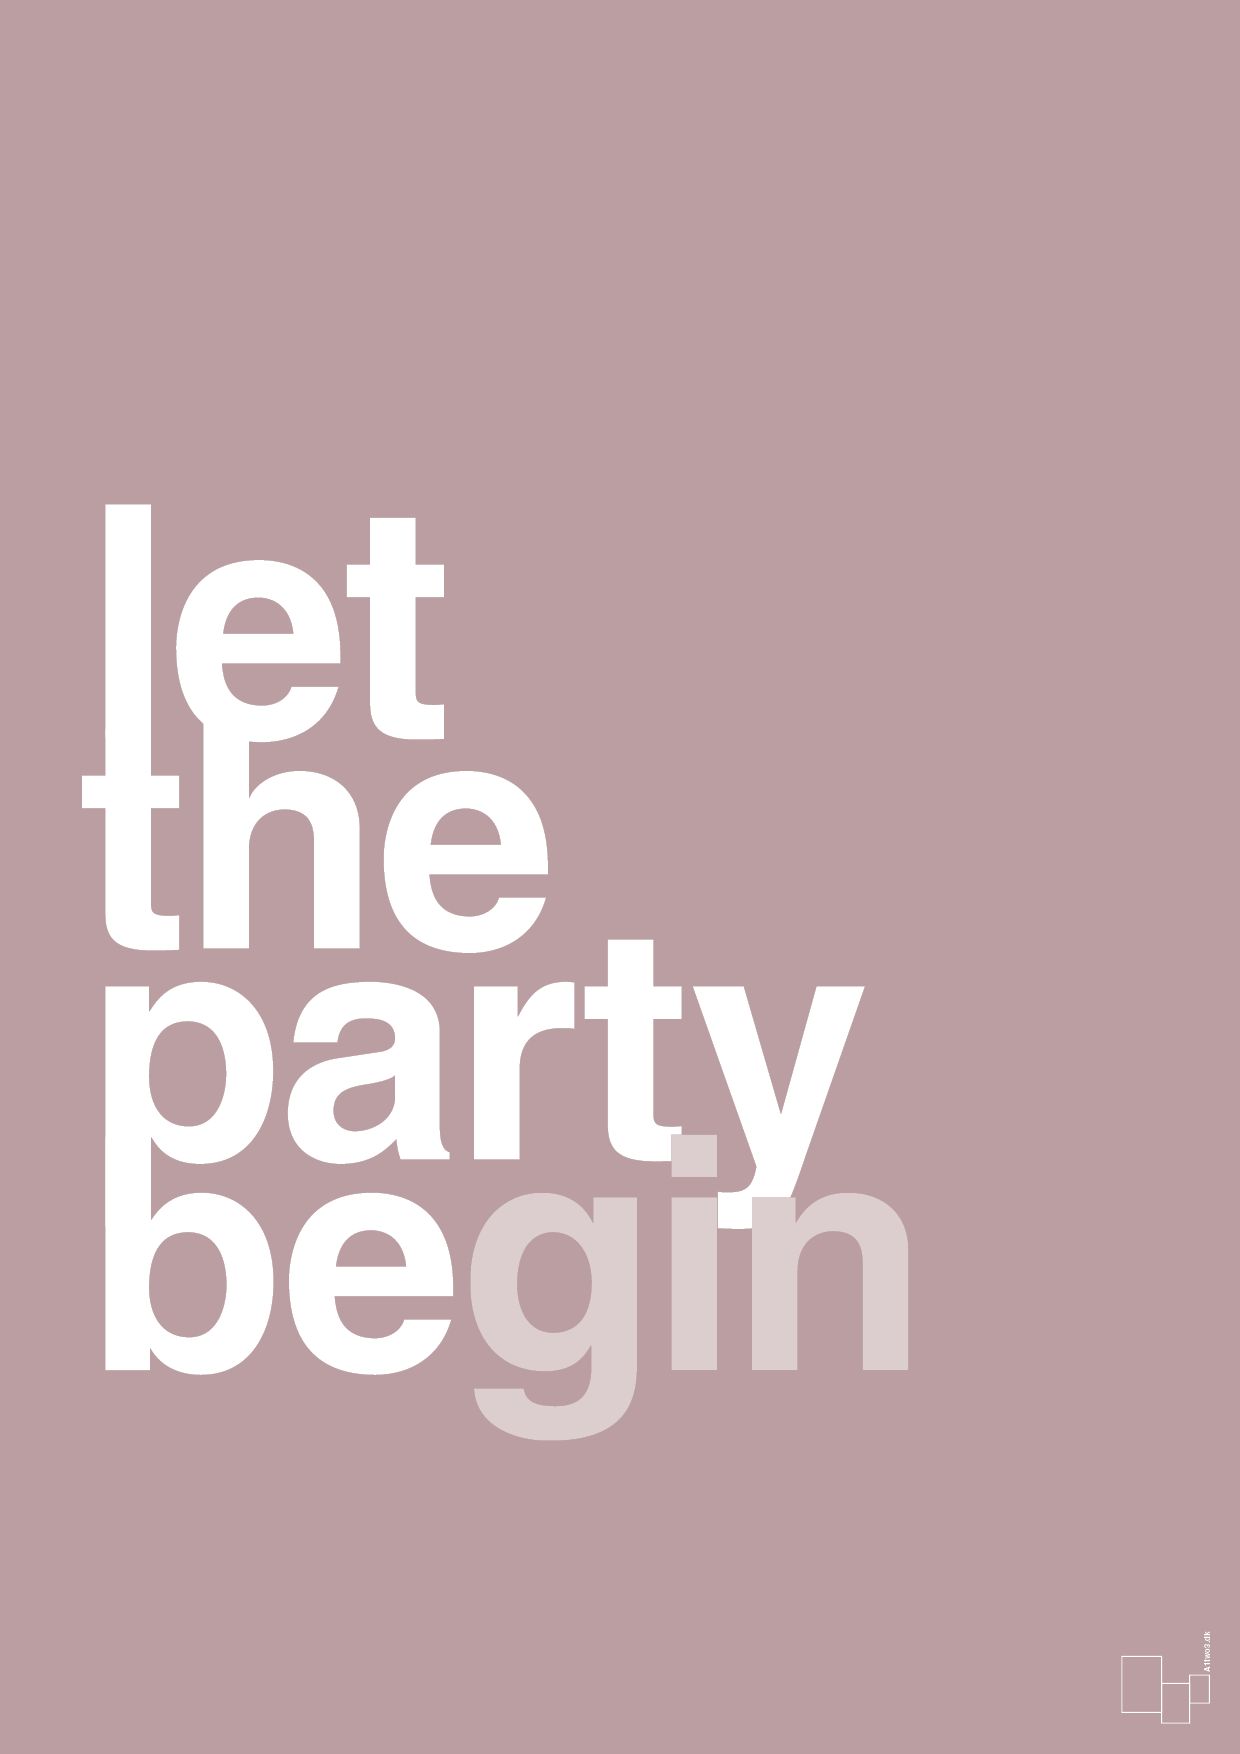 let the party begin - Plakat med Ordsprog i Light Rose